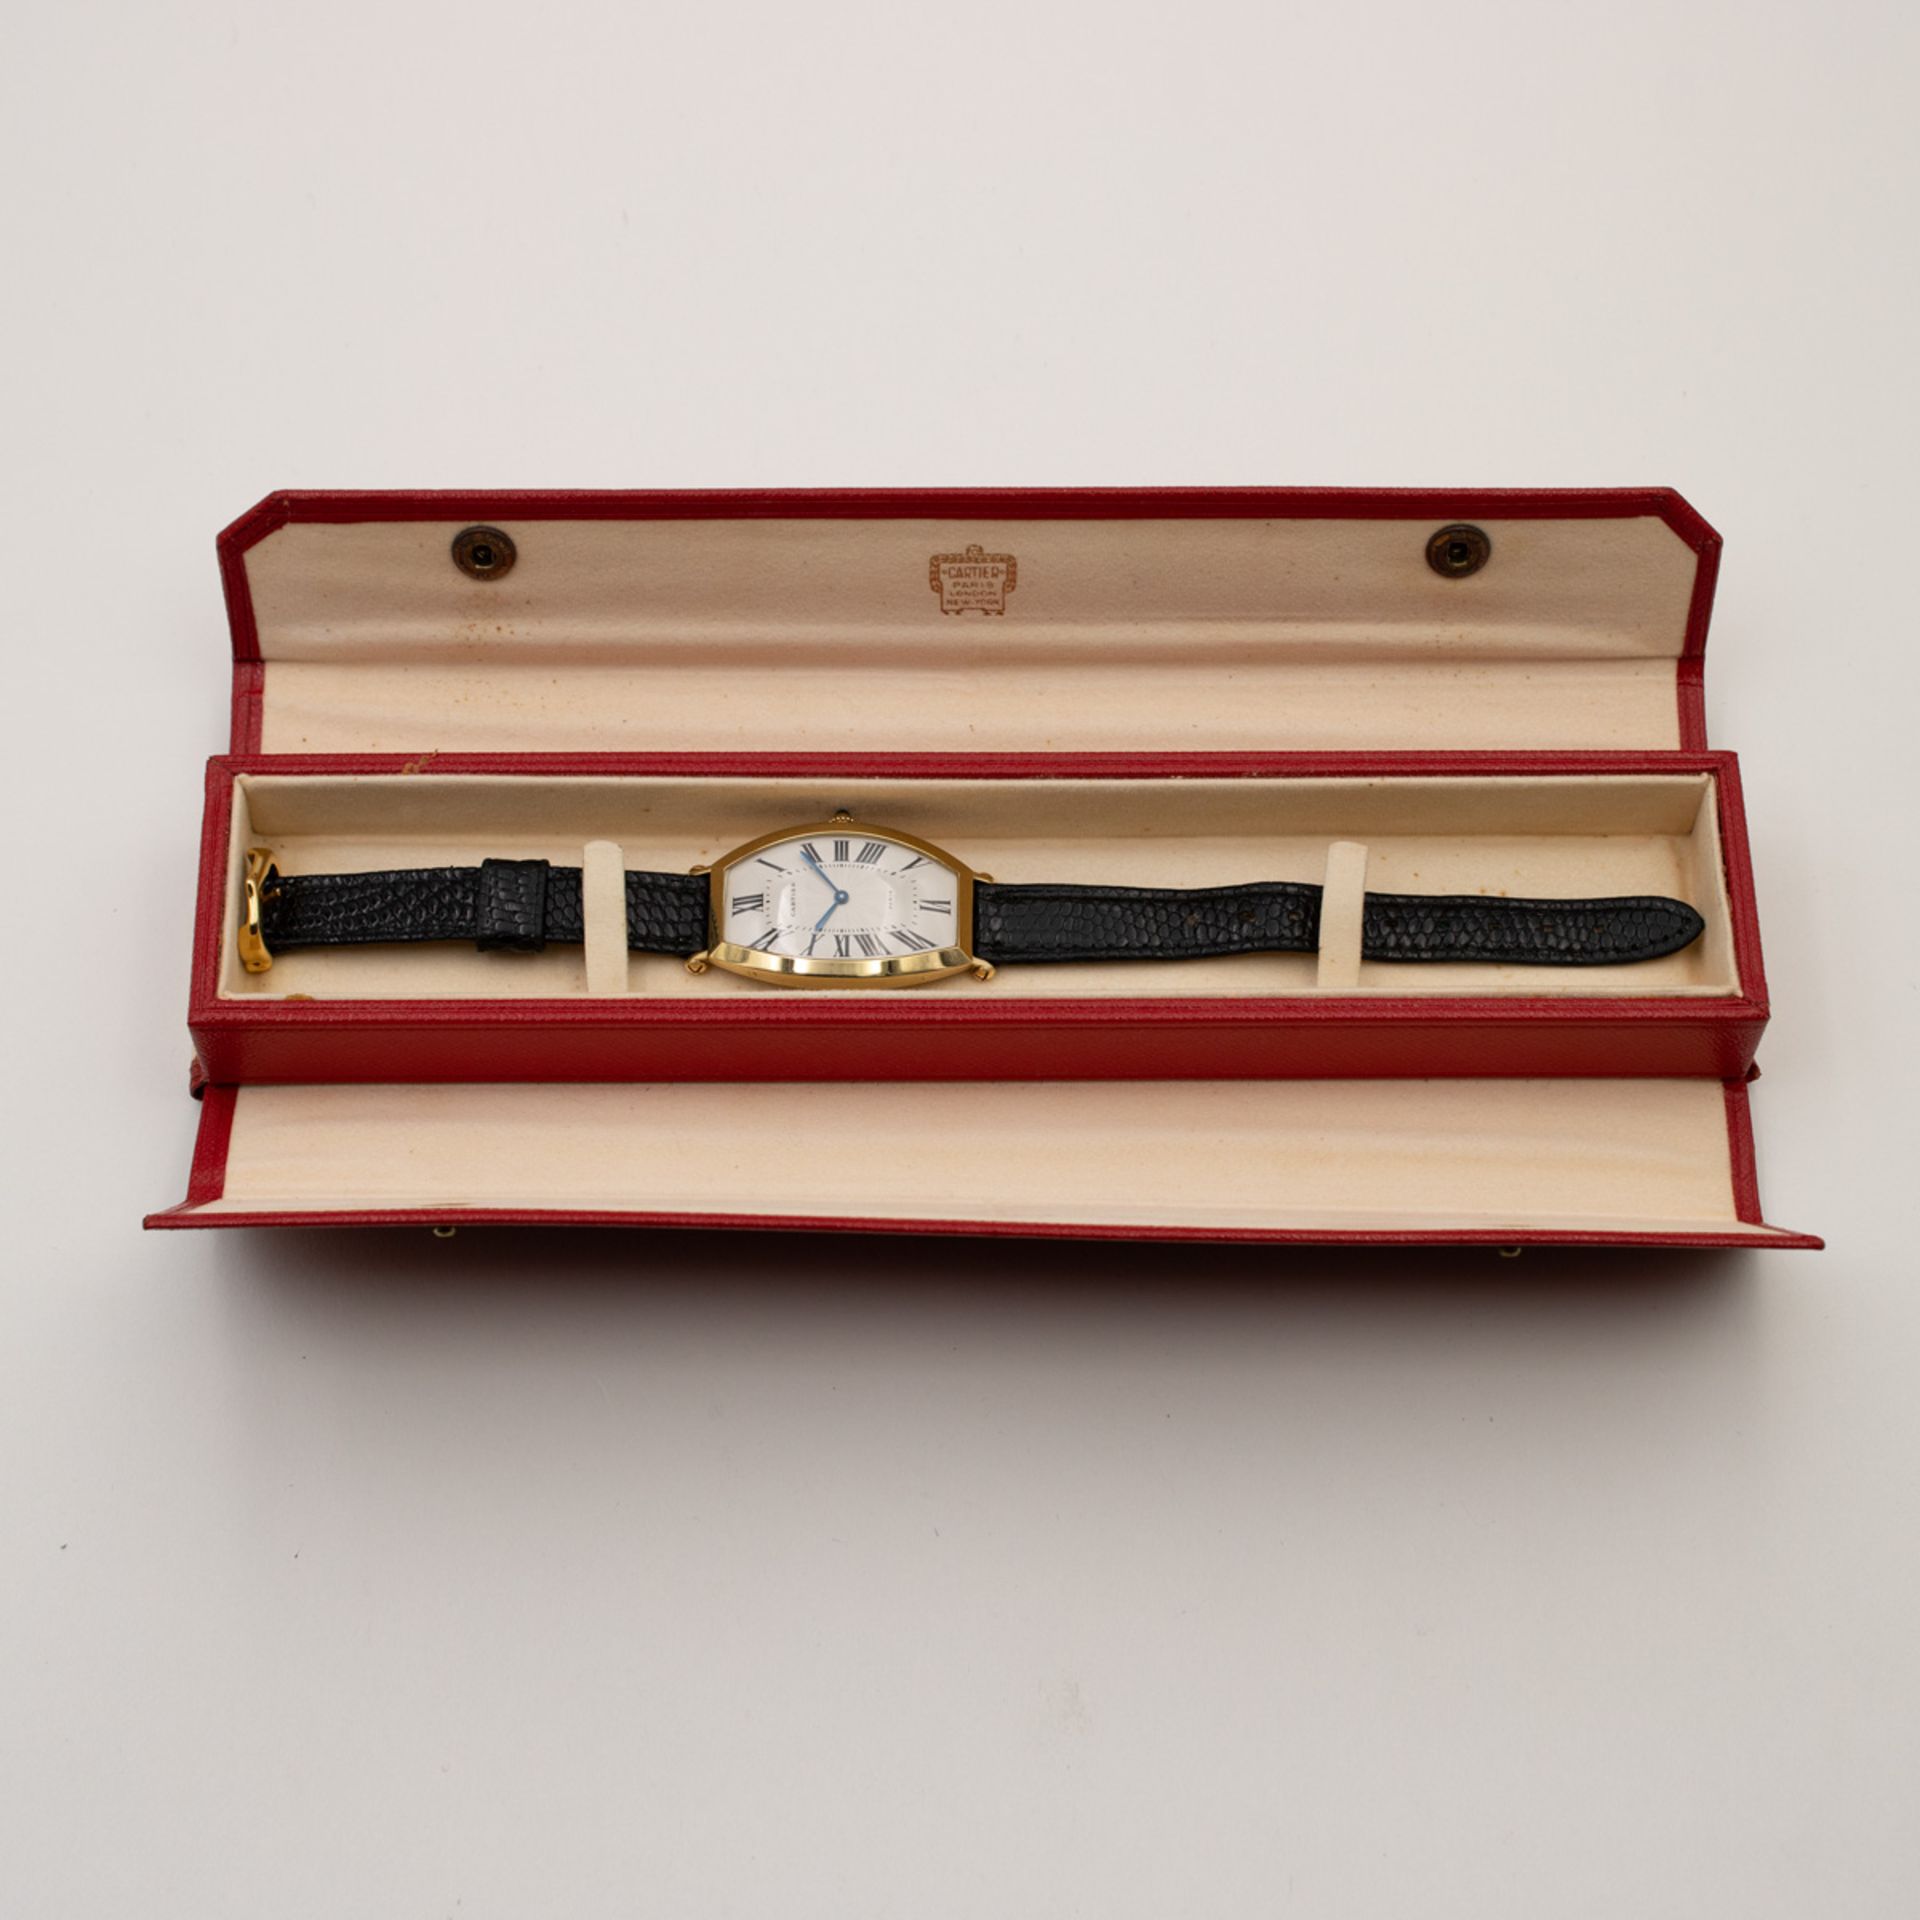 Cartier Tonneau vintage wristwatch - Image 3 of 3